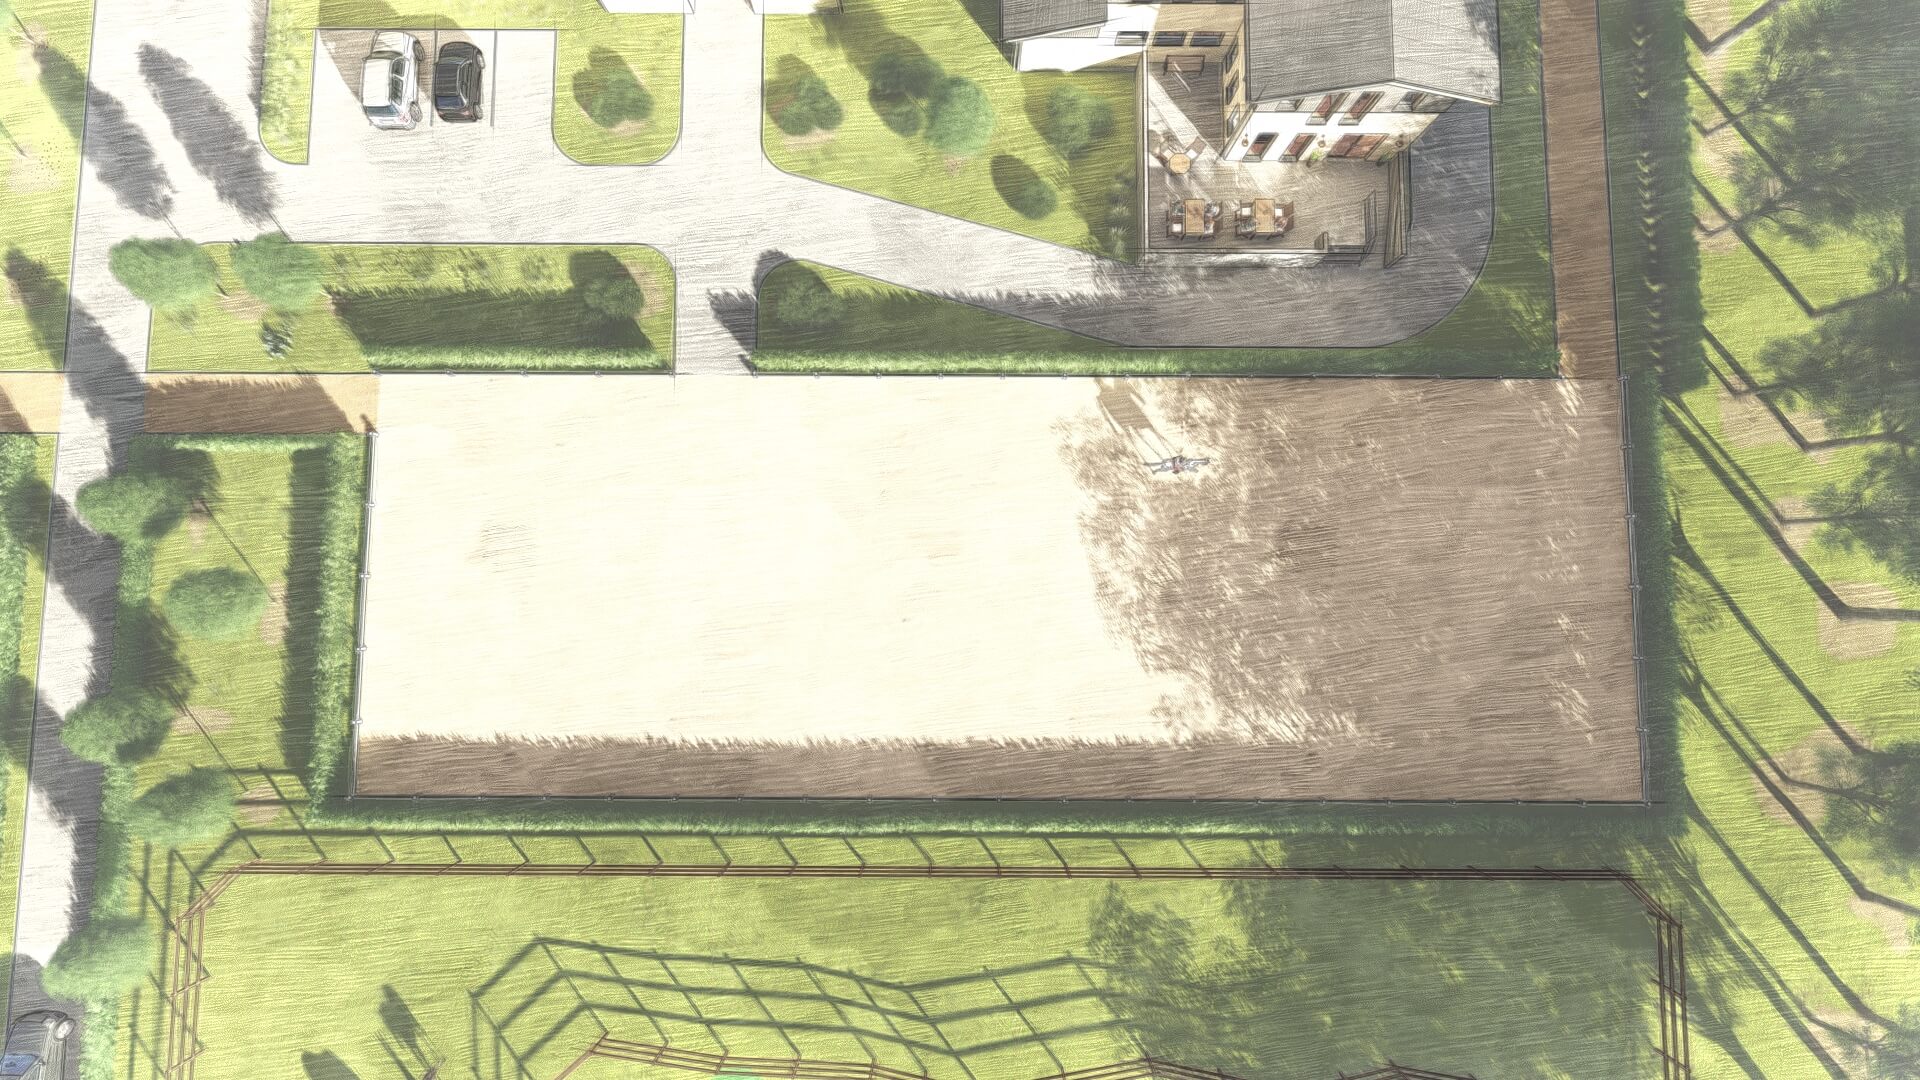 Luftaufnahme einer Planzeichnung von EQUUS DESIGN PLANUNG, die eine Reitanlage mit großen Reitplätzen, Stallungen und umgebenden Grünflächen zeigt, eingebettet in eine ruhige, baumreiche Landschaft.